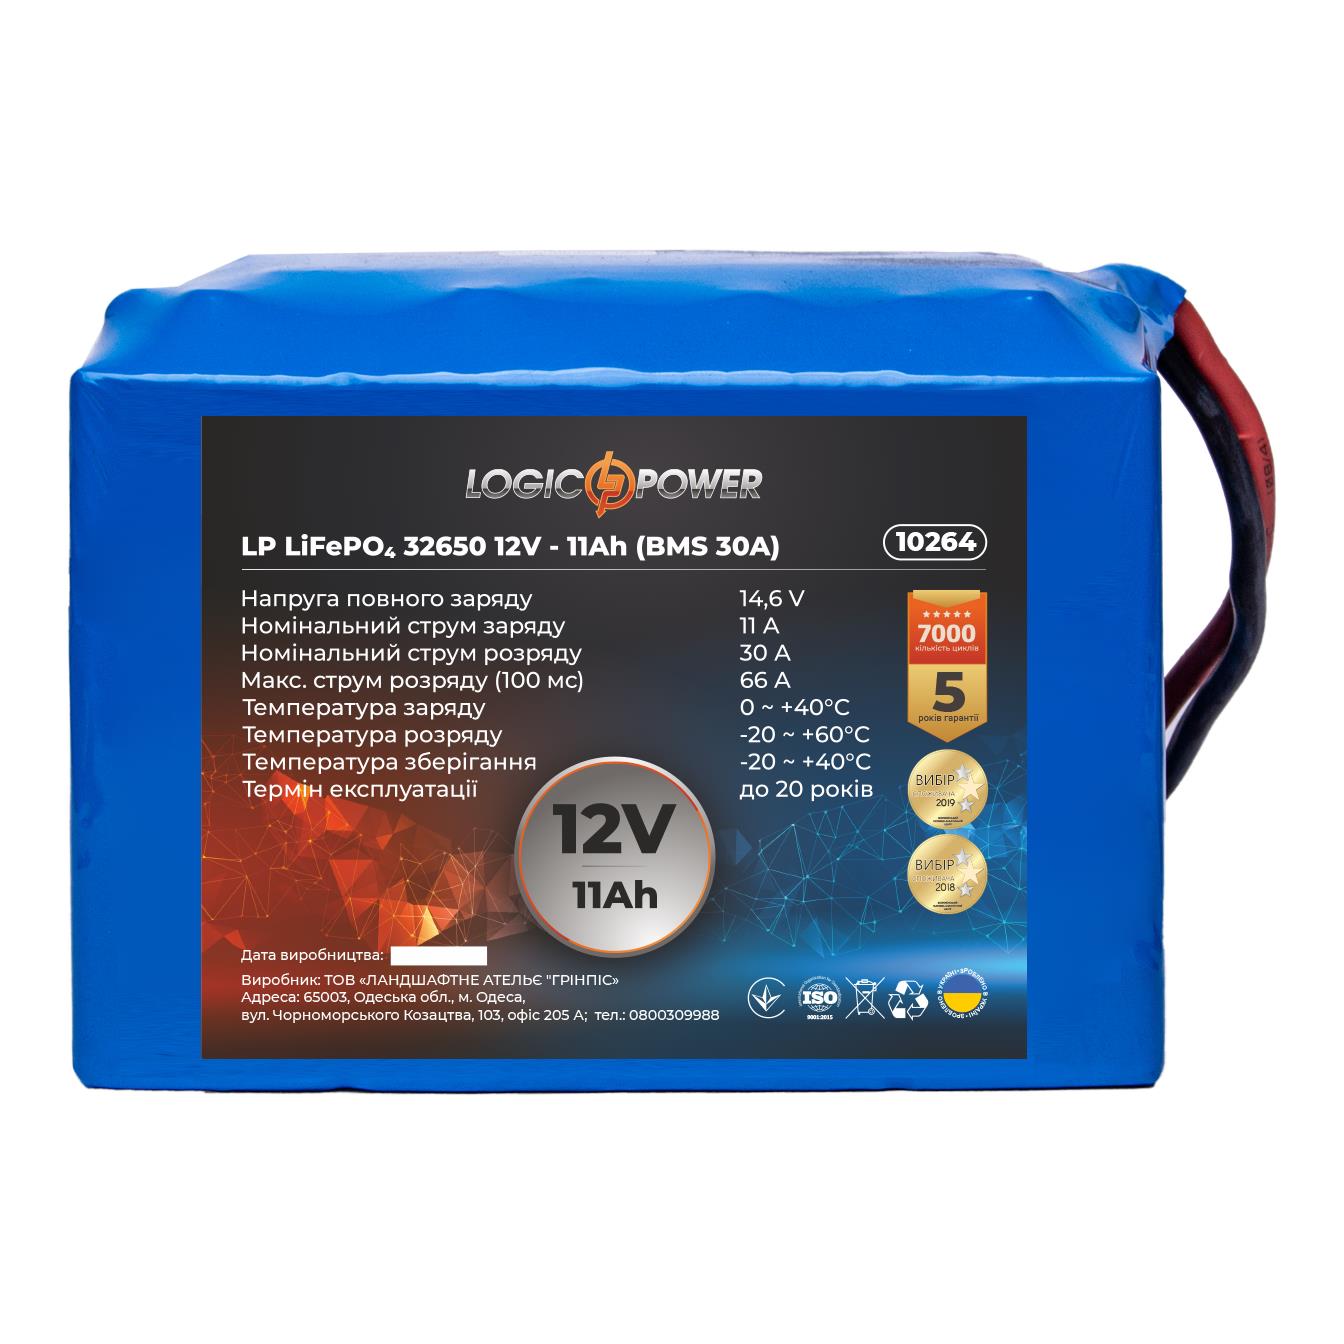 Ціна акумулятор літій-залізо-фосфатний LogicPower LP LiFePO4 32650 12V - 11 Ah (BMS 30A) (10264) в Одесі